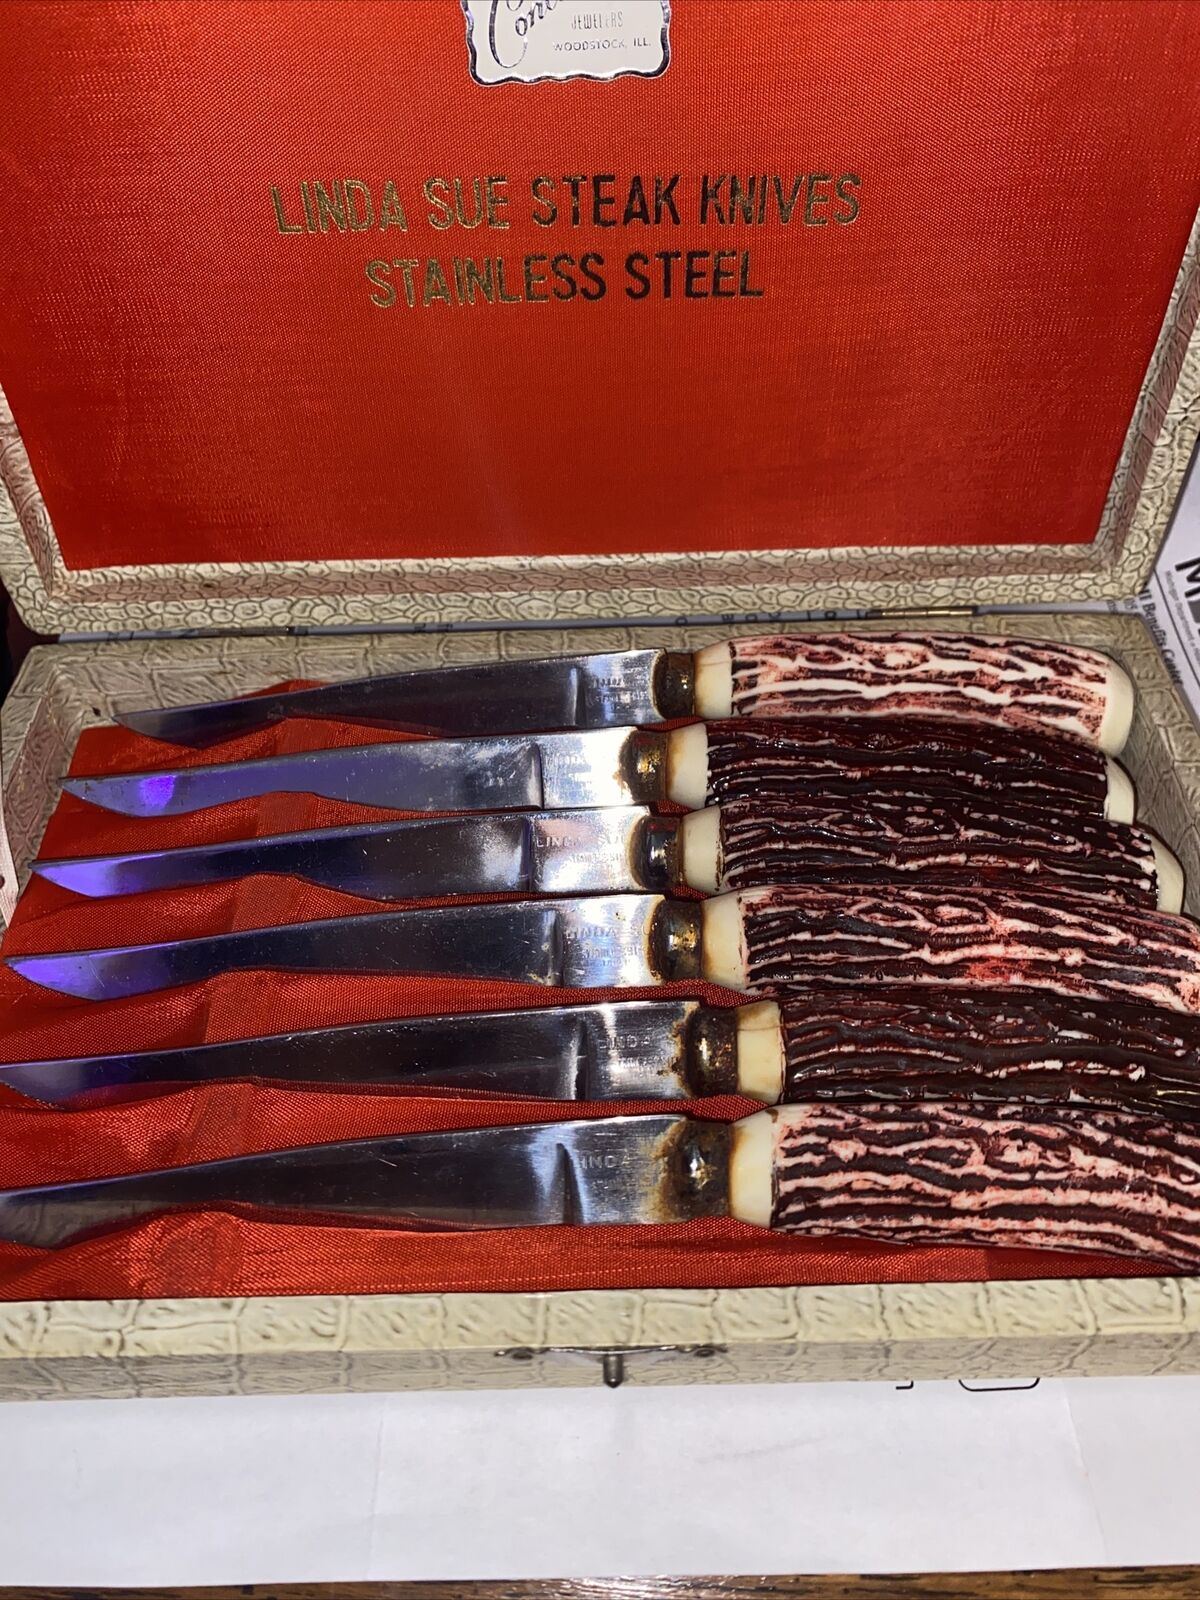 Vintage conlins jewelers woodstock ill linda sue steak knives stainless steel